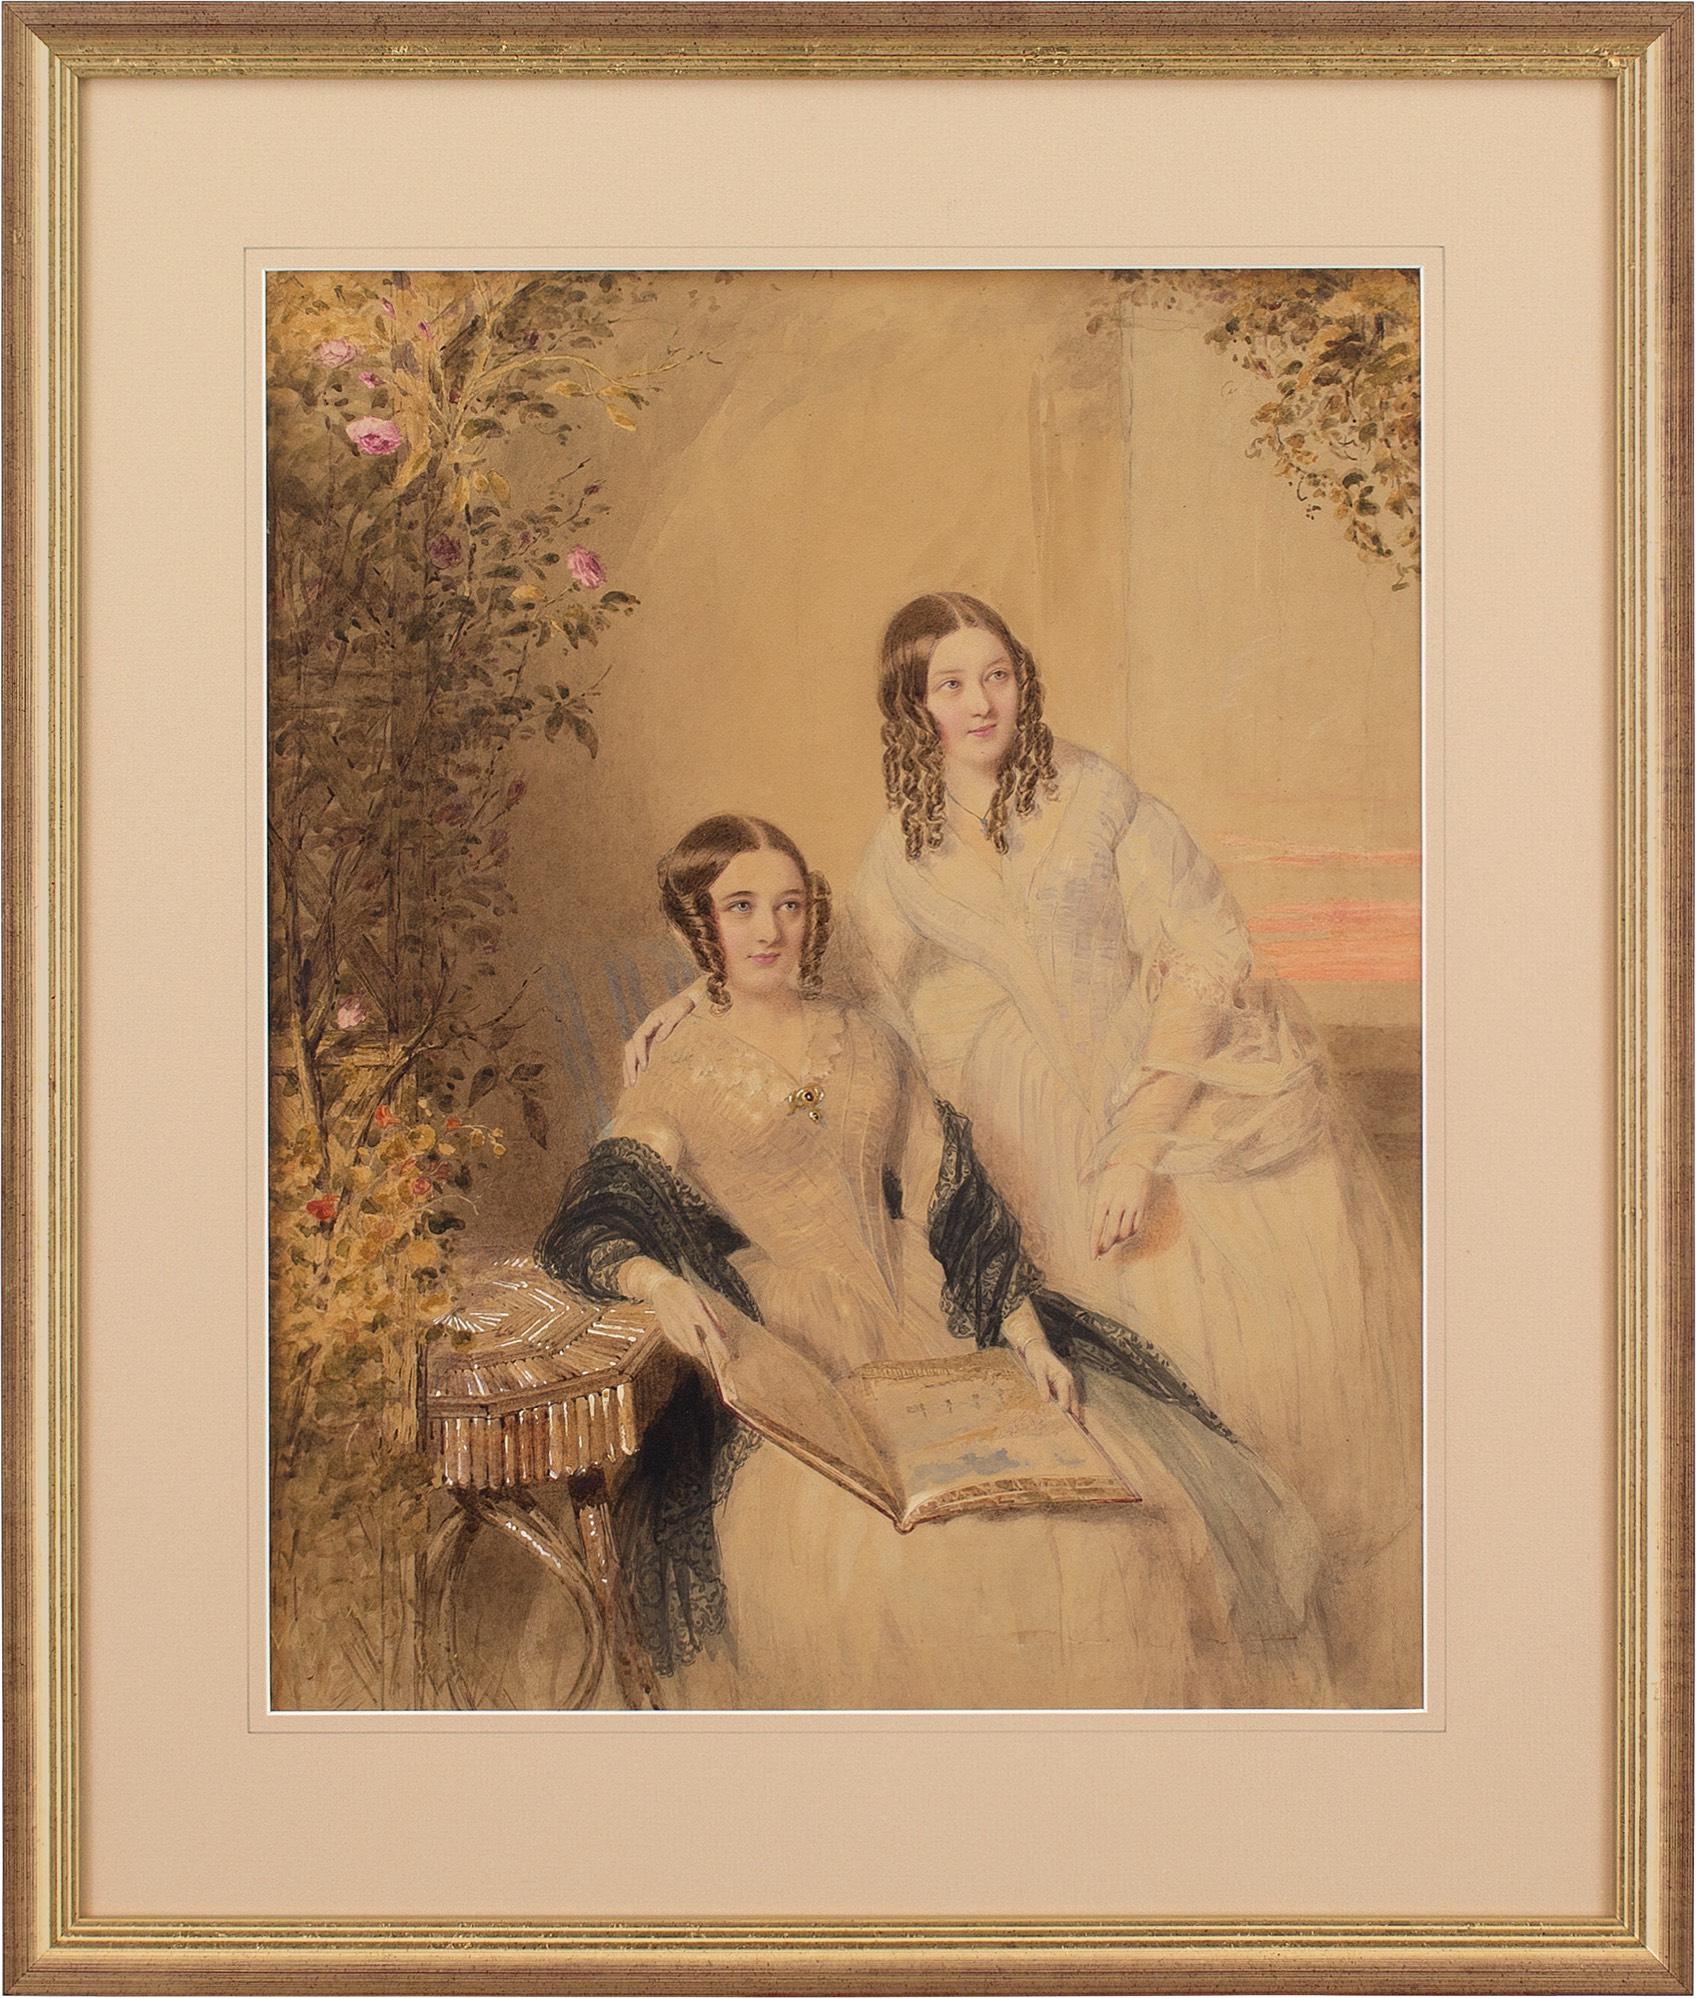 William Drummond, Porträt zweier Schwestern, Aquarell